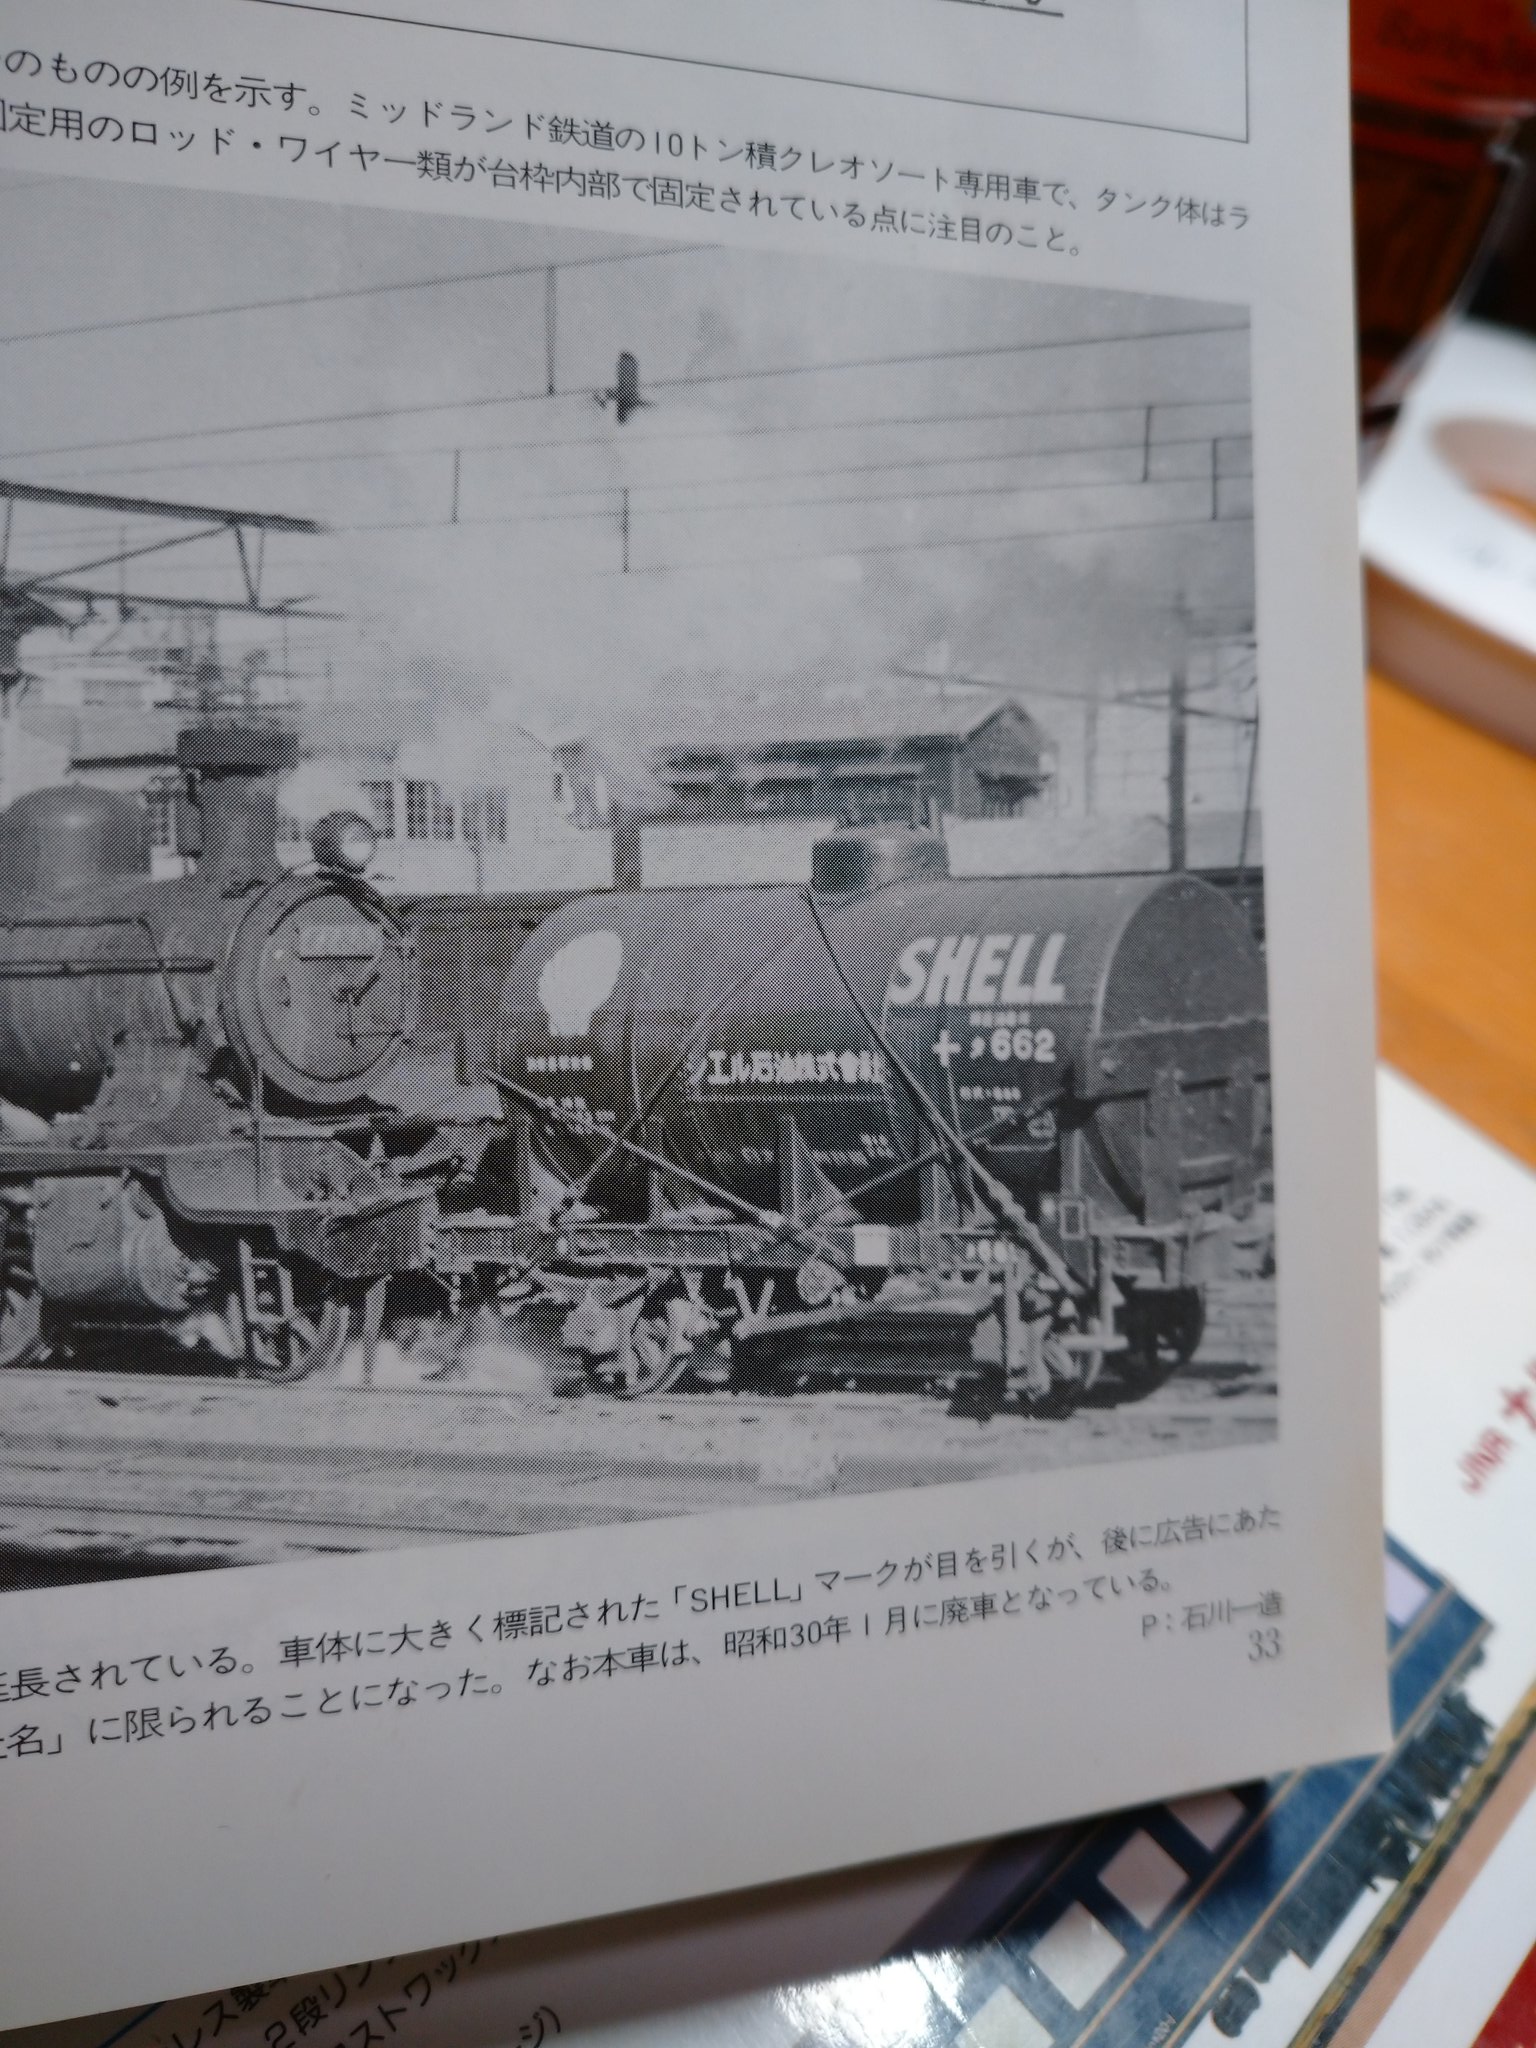 Twitter 上的 あきぽん 今話題の貨物鉄道博物館へ収蔵された七尾のタ600ですが 戦後の姿の写真が トワイライトゾーンマニュアル10にありました V ちんまりとしたかわいいタンク車です 昭和27年新宿駅での撮影で その頃はタンク体右側にあるやうな